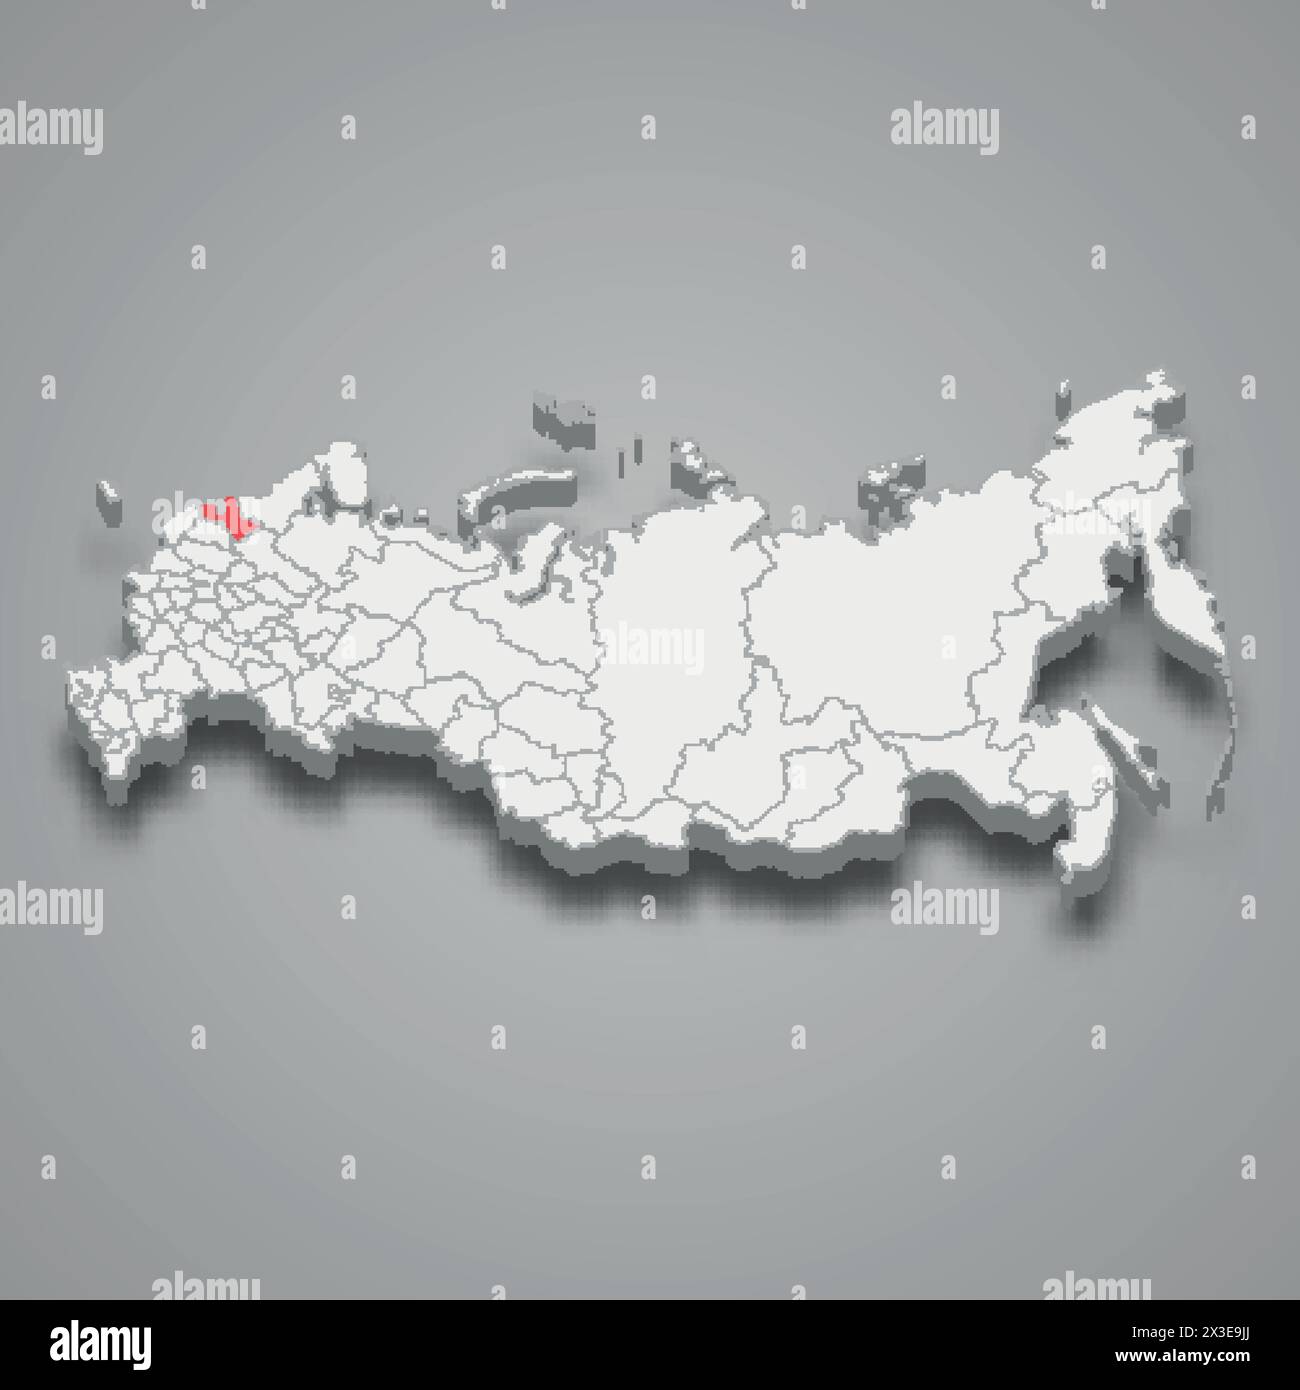 Région de Leningrad mise en évidence en rouge sur une carte 3D de Russie grise Illustration de Vecteur